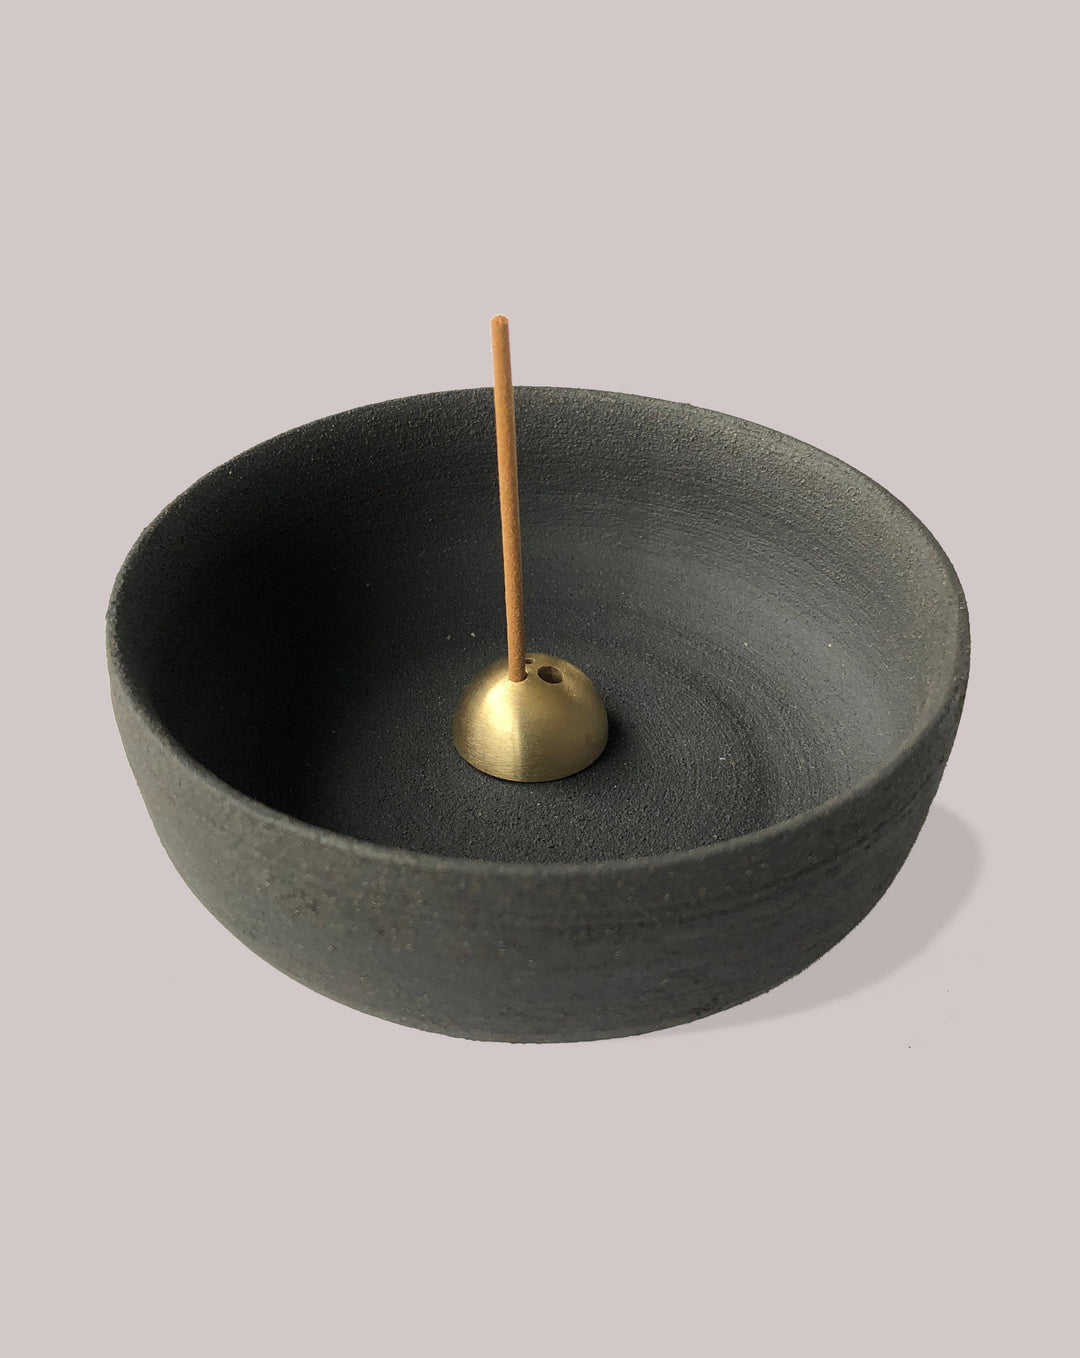 UME-COLLECTION INCENSE STICK HOLDER Incense Burner and Smudging Bowl - Raw Black.